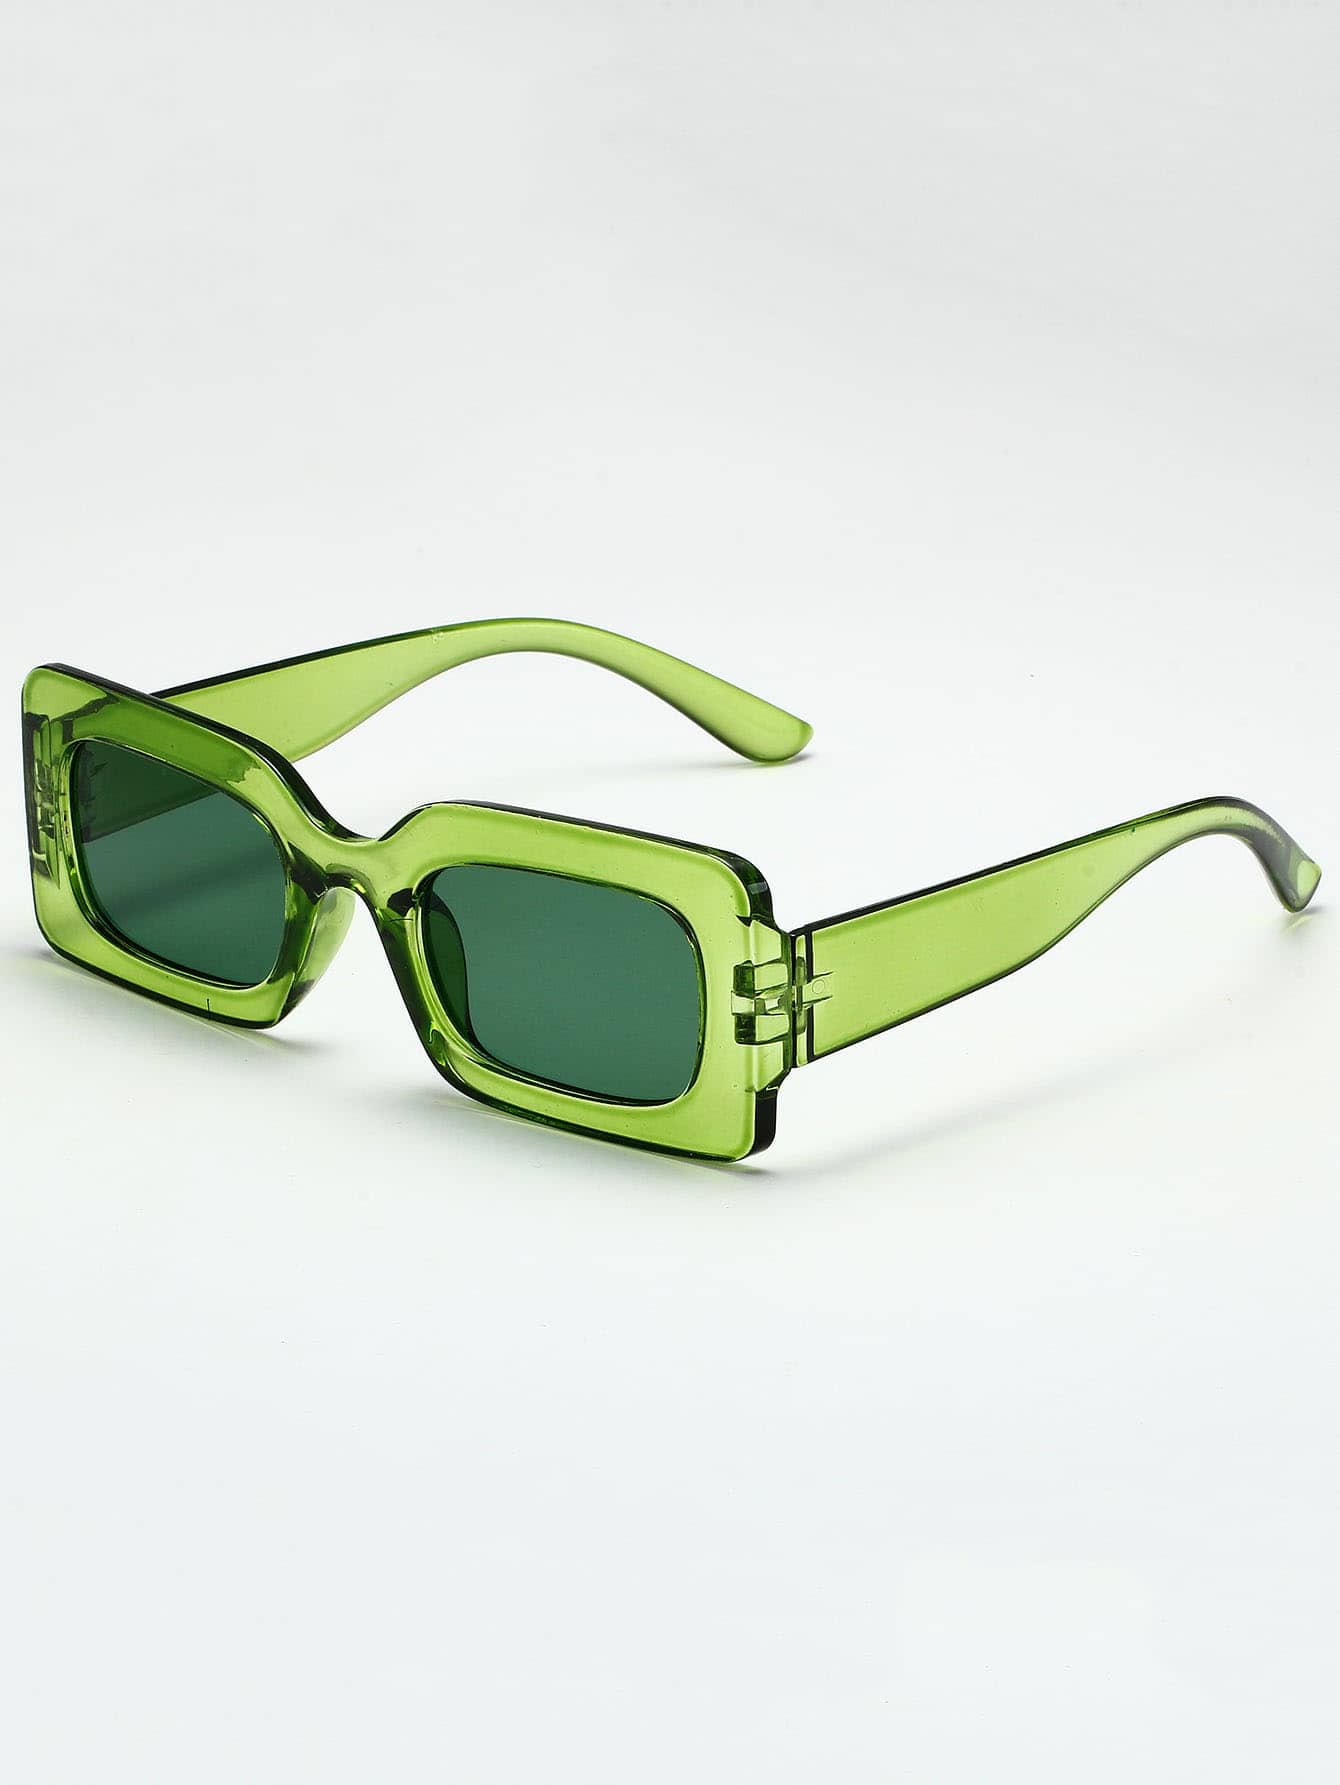 1шт унисекс прямоугольной формы ПК декоративные солнцезащитные очки